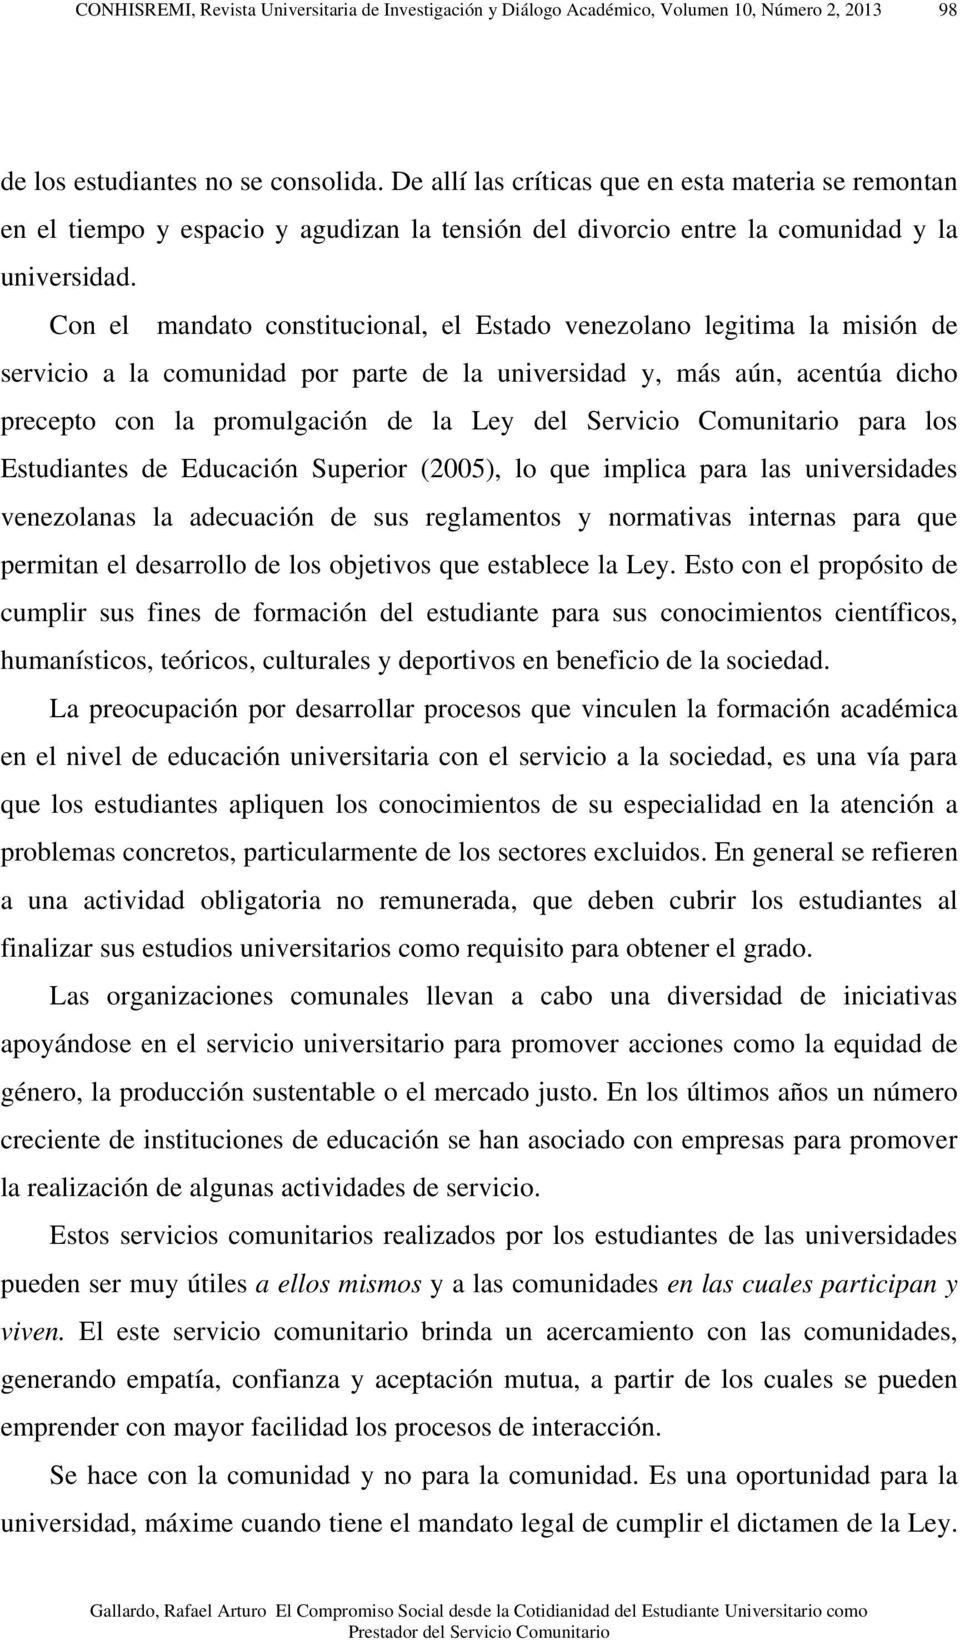 Con el mandato constitucional, el Estado venezolano legitima la misión de servicio a la comunidad por parte de la universidad y, más aún, acentúa dicho precepto con la promulgación de la Ley del